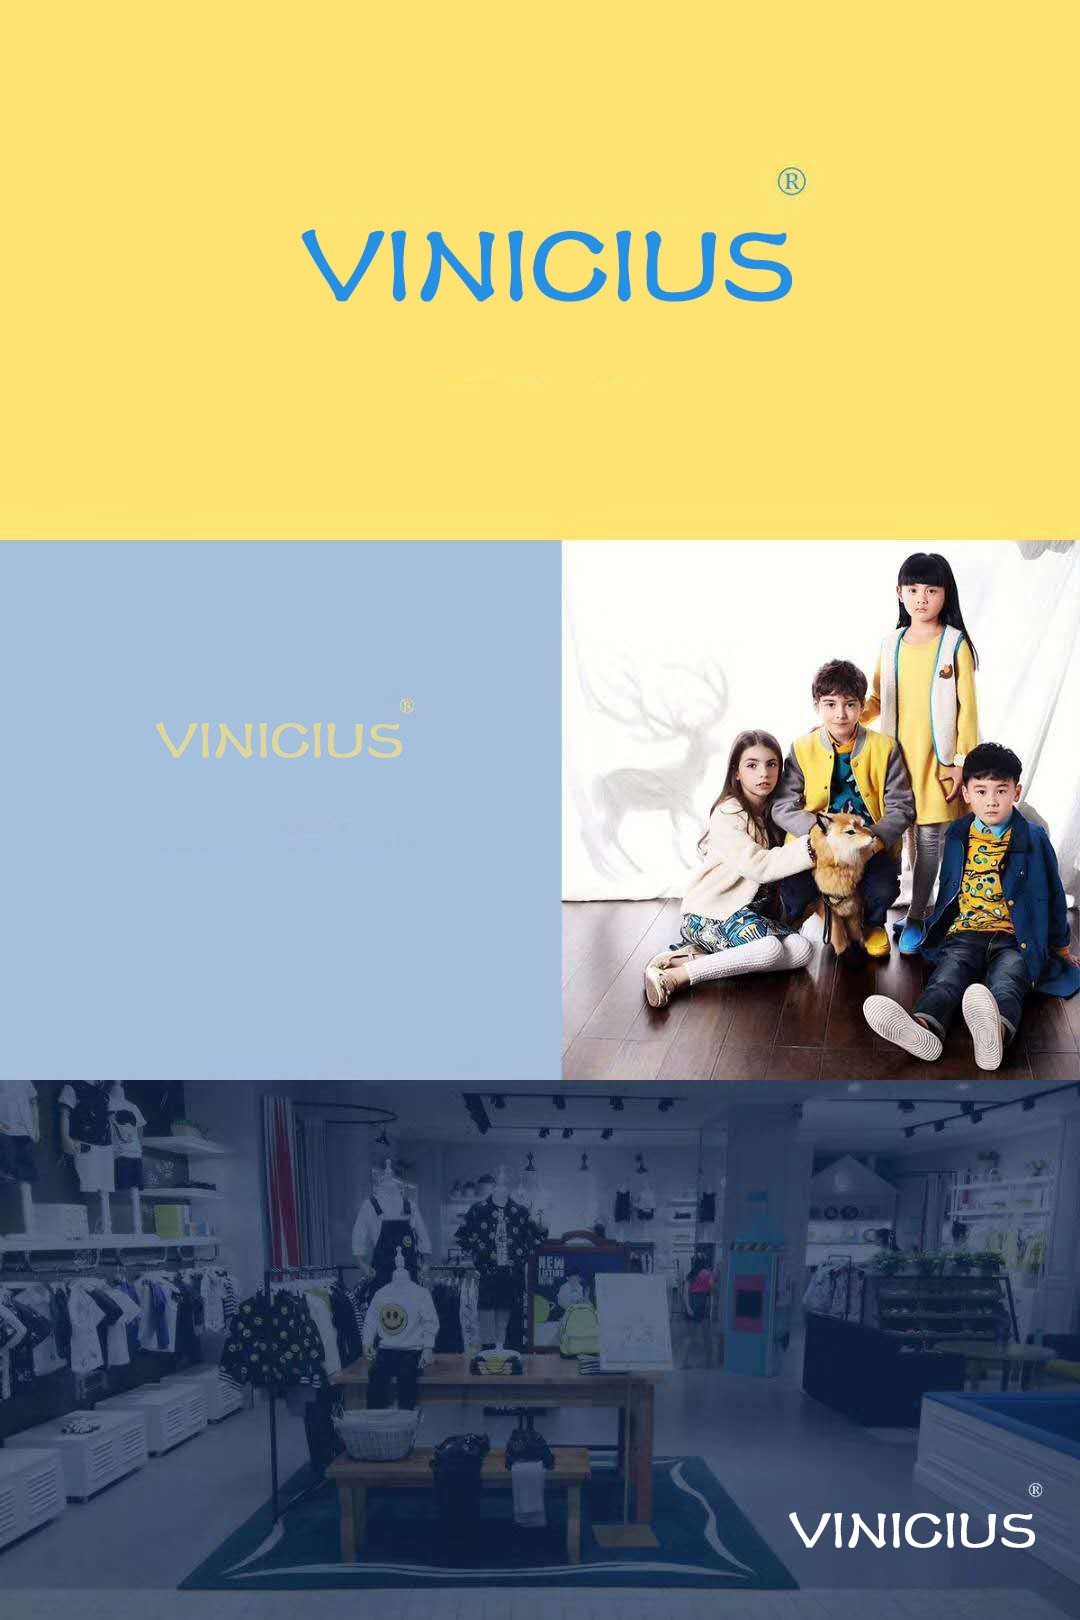 Vinícius(服裝品牌)